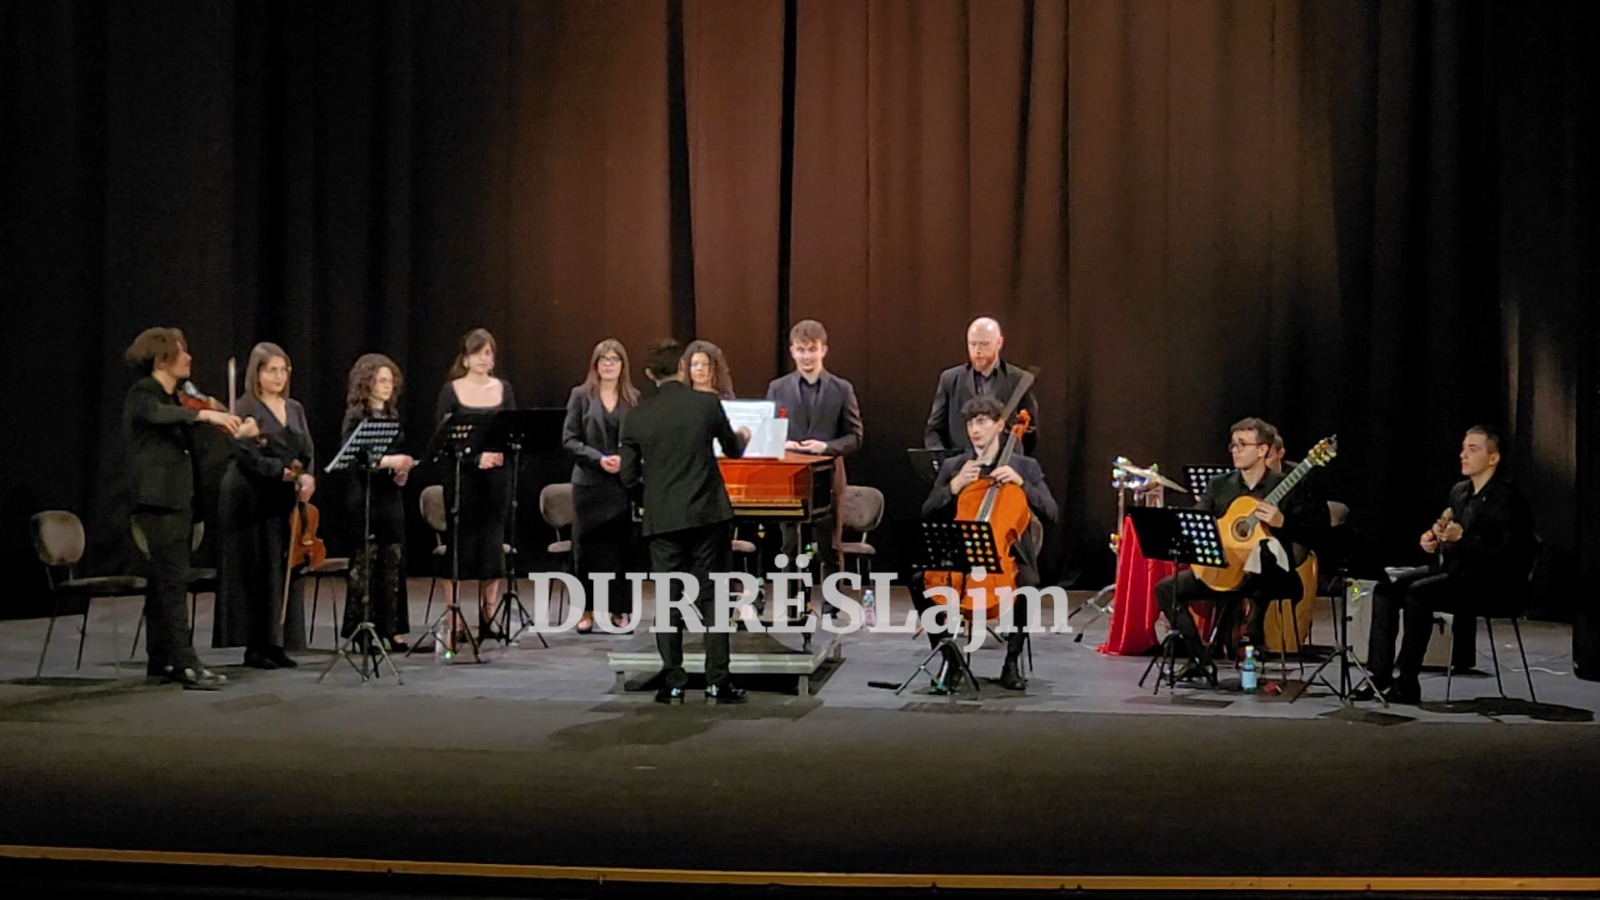 Opera në Durrës sjell repertor barok në skenën e teatrit “Aleksandër Moisiu” (VIDEO)